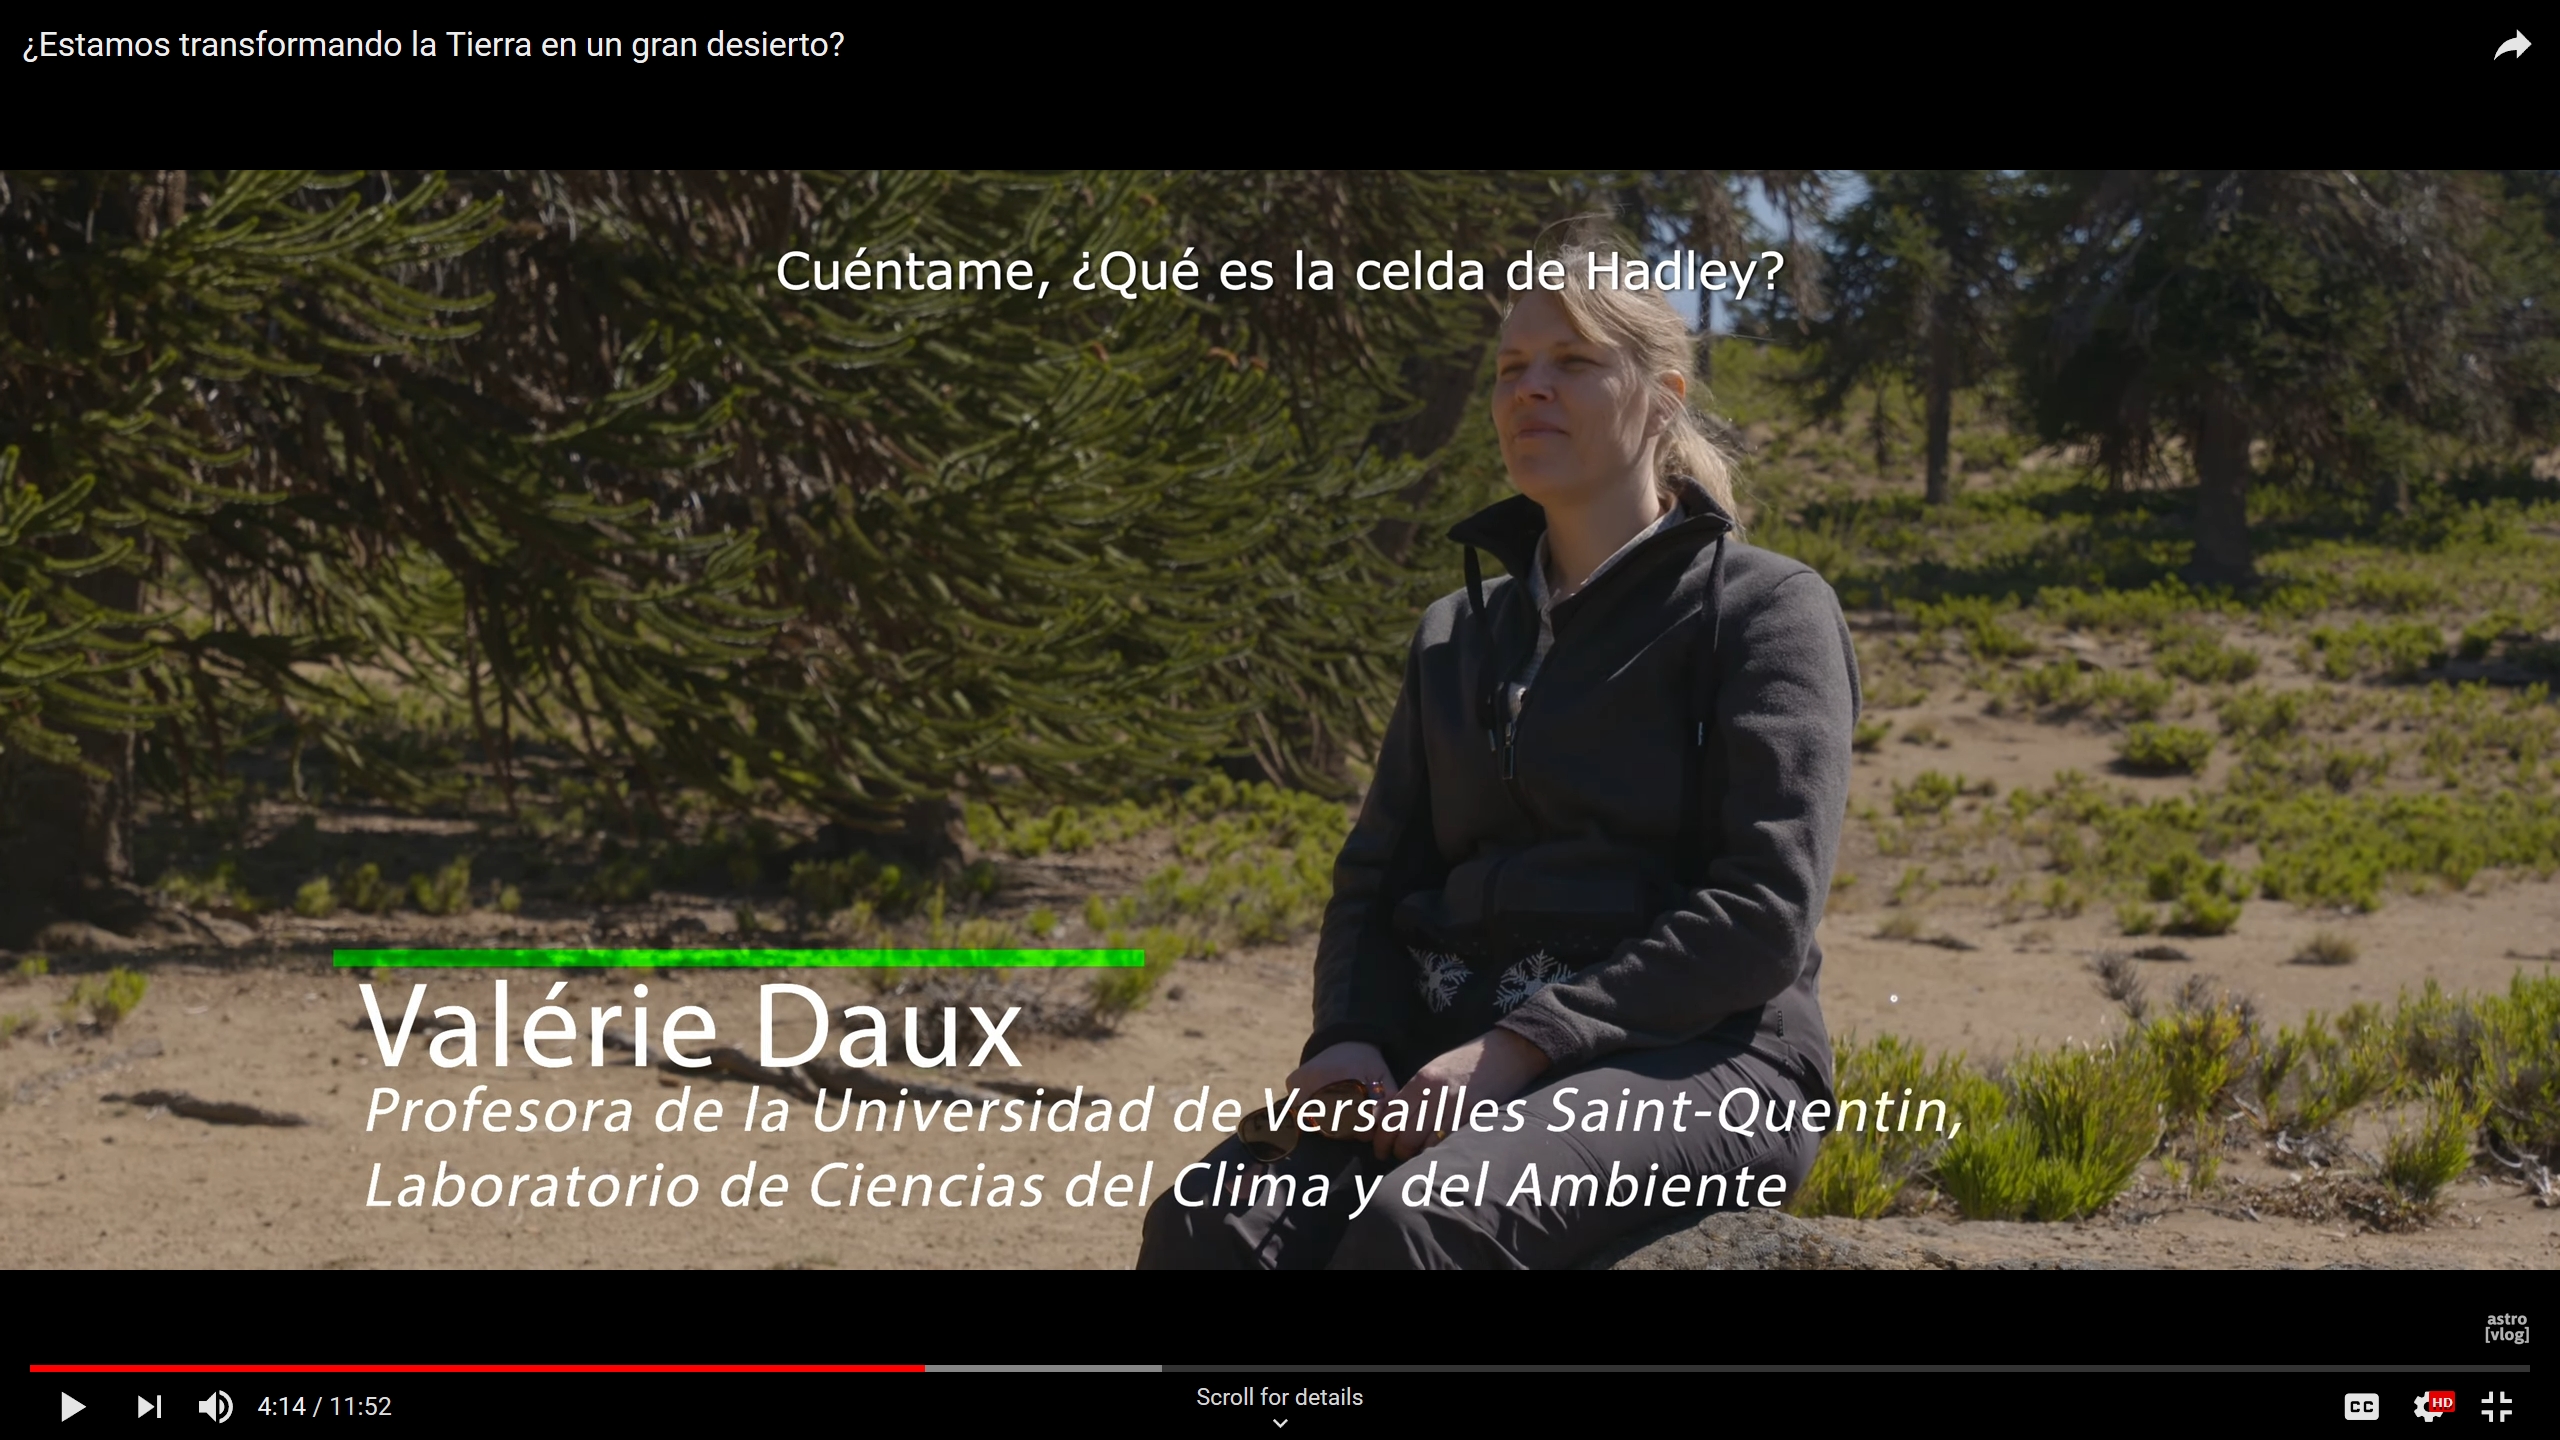 Le projet THEMES, porté par Valérie Daux, présenté par le bloggeur chilien astrovlog (en espagnol)